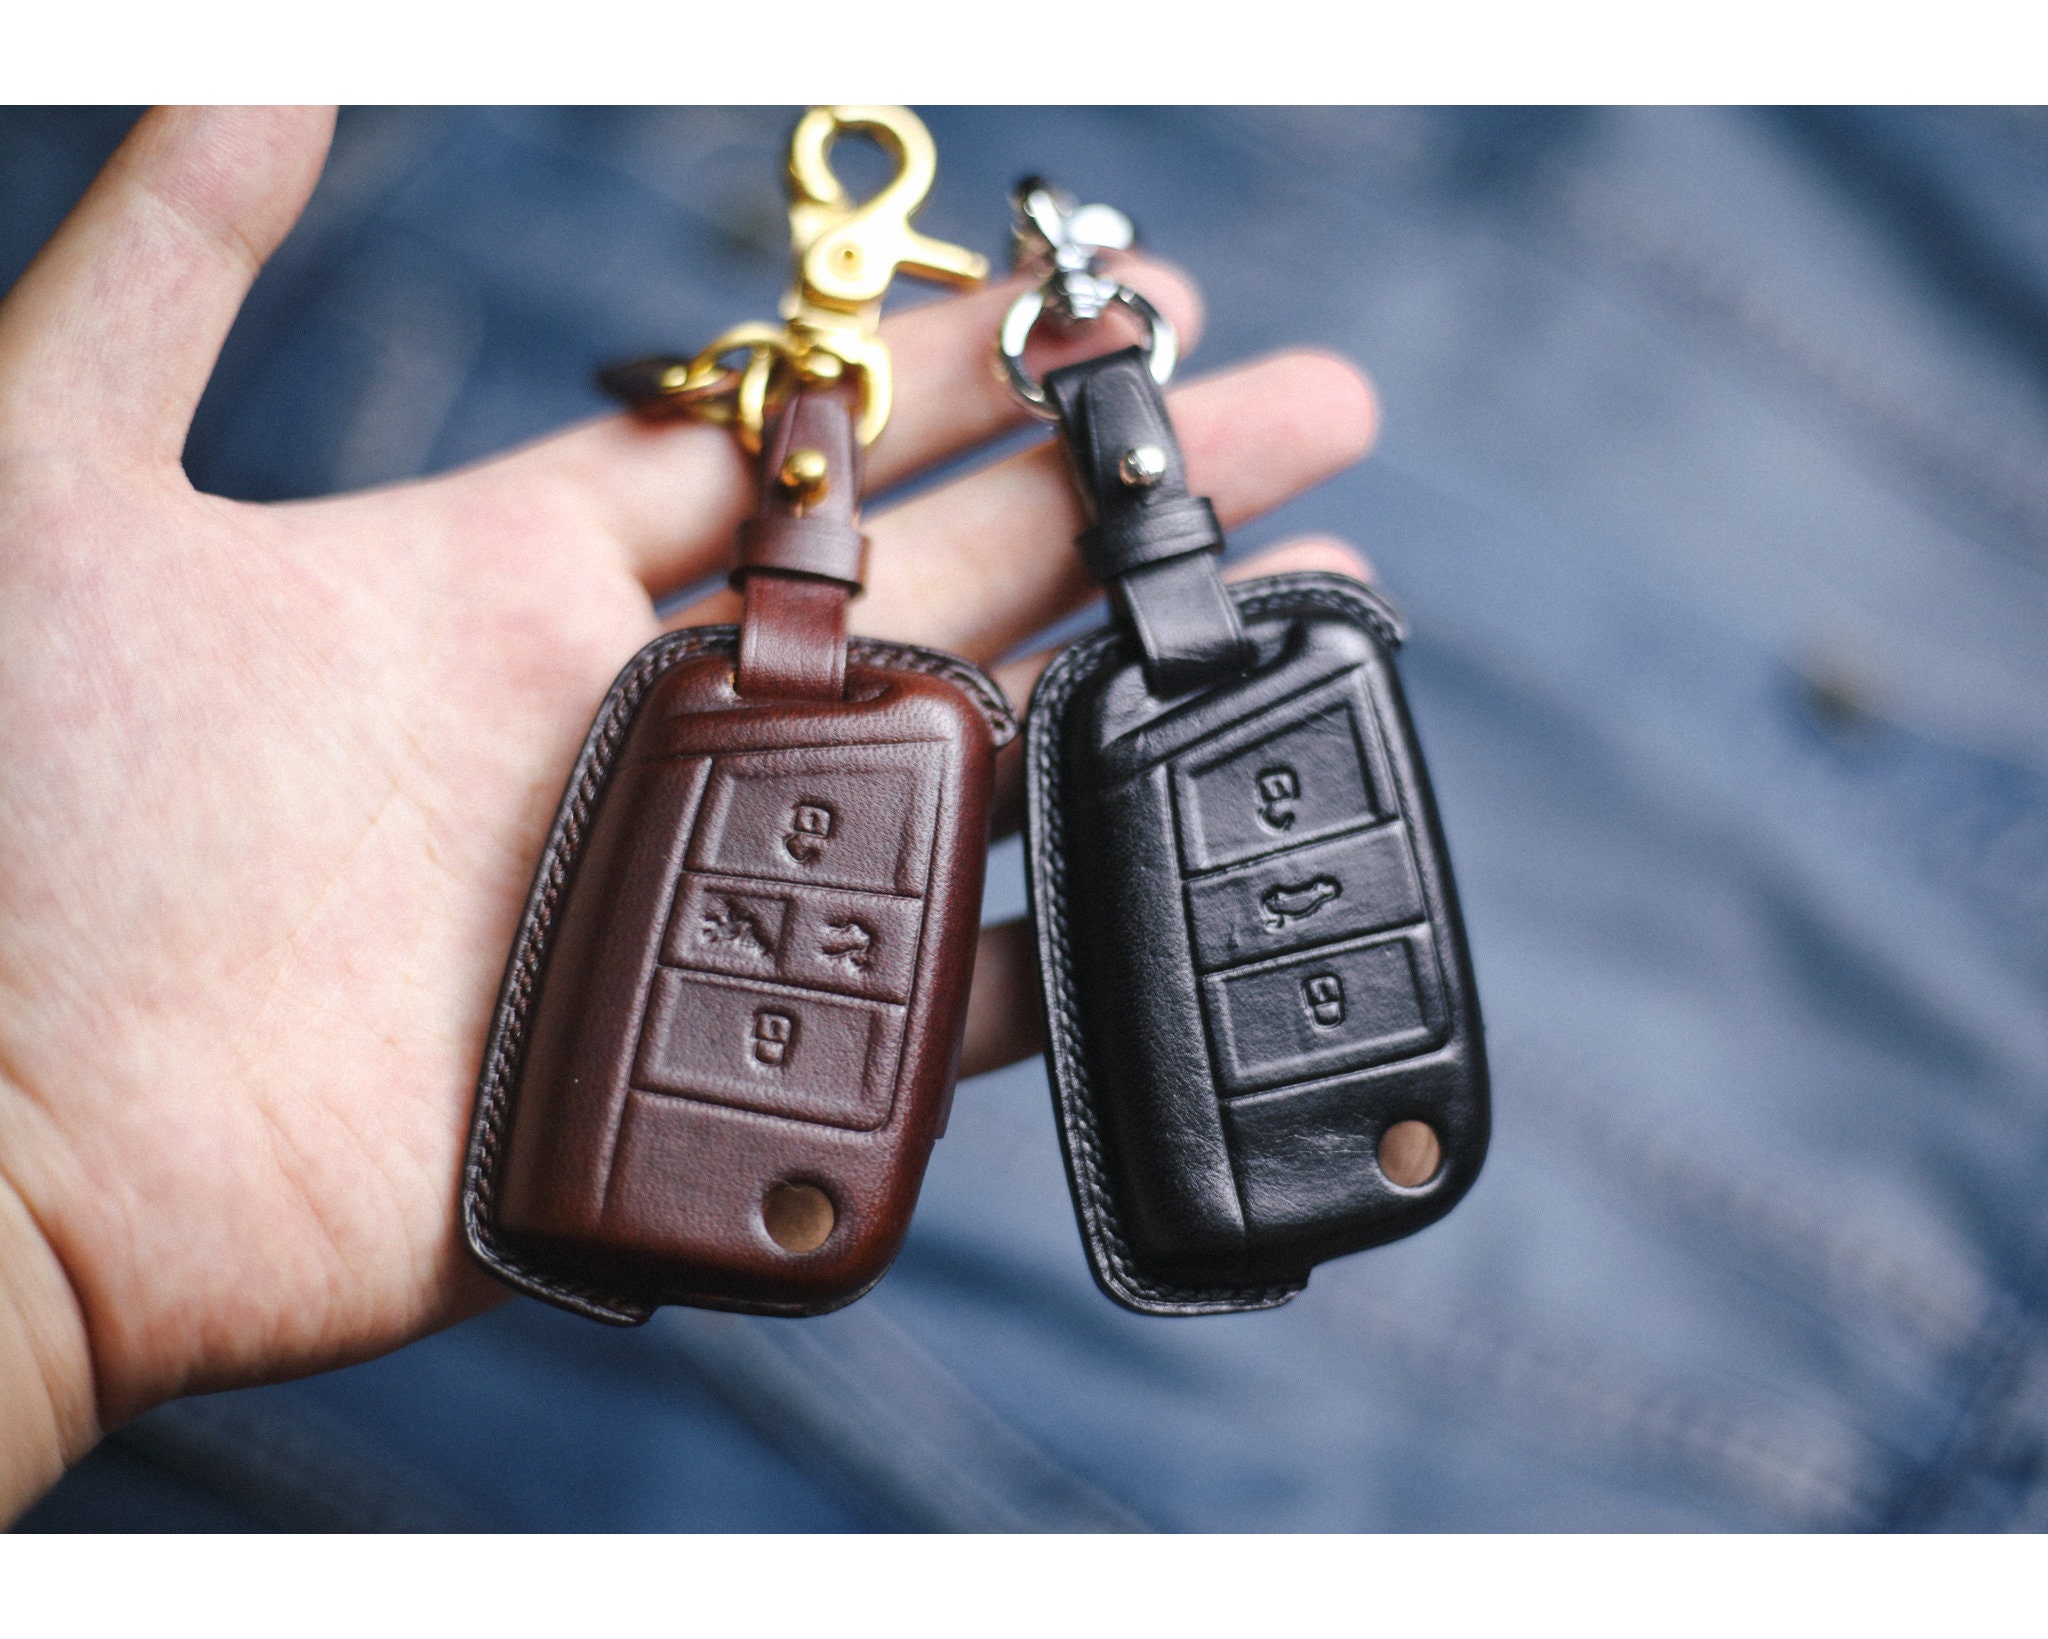 Echt Carbon Auto Schlüssel Cover für VW Passat 3G / Arteon schwarz, 49,90 €